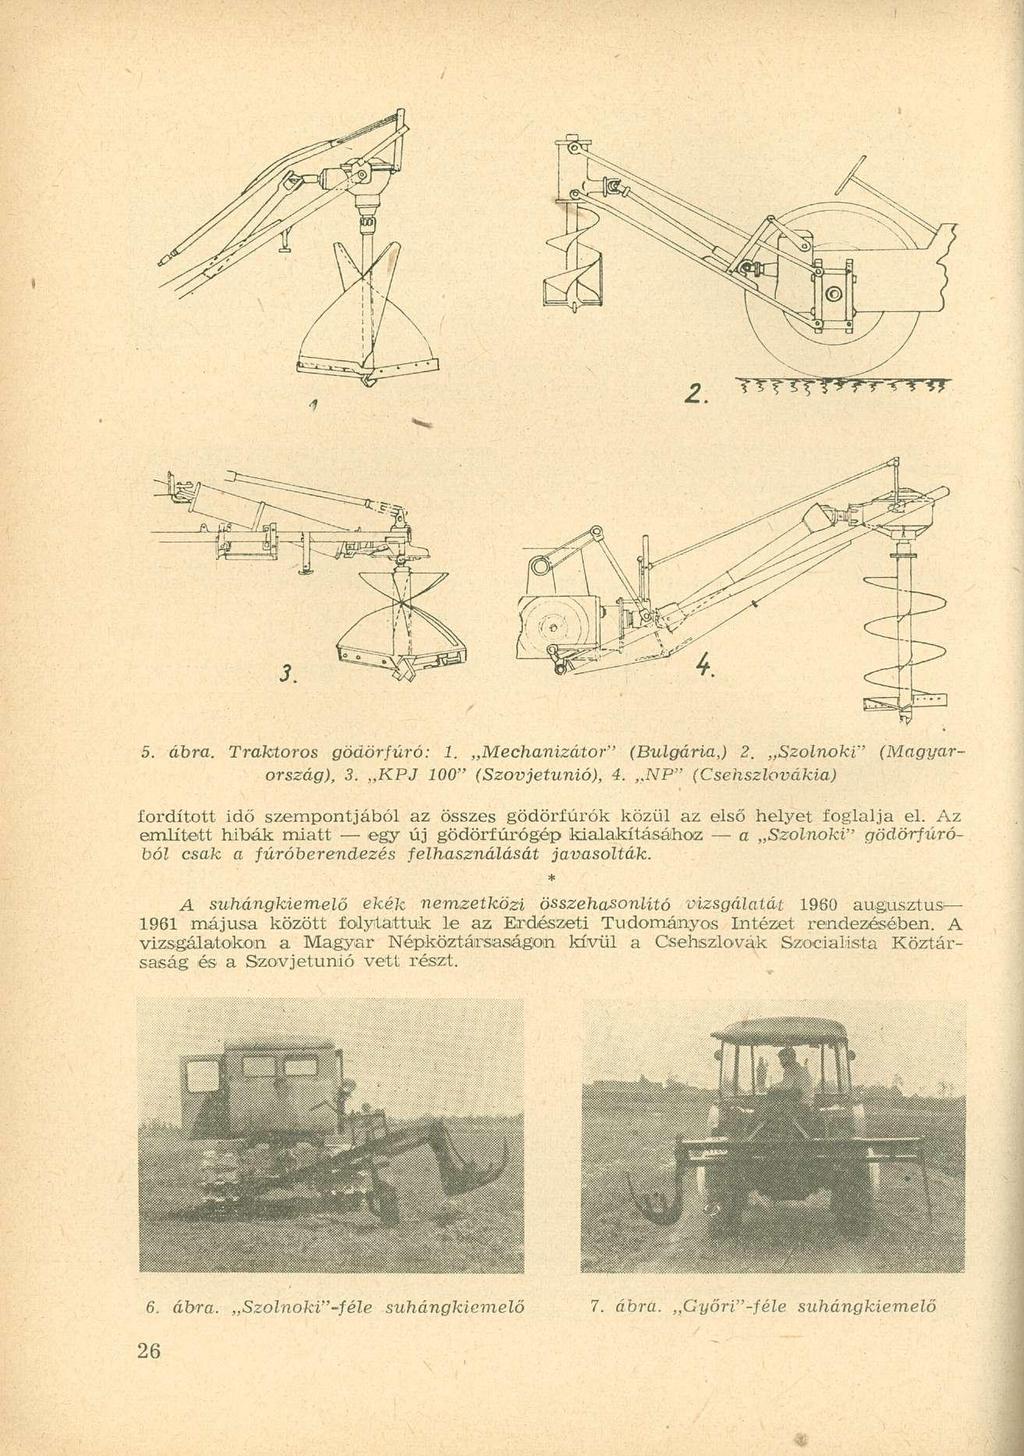 5. ábra. Traktoros gödörfúró: 1. Mechanizátor" (Bulgária,) 2. Szolnoki" (Magyarország), 3. KPJ 100" (Szovjetunió), 4.